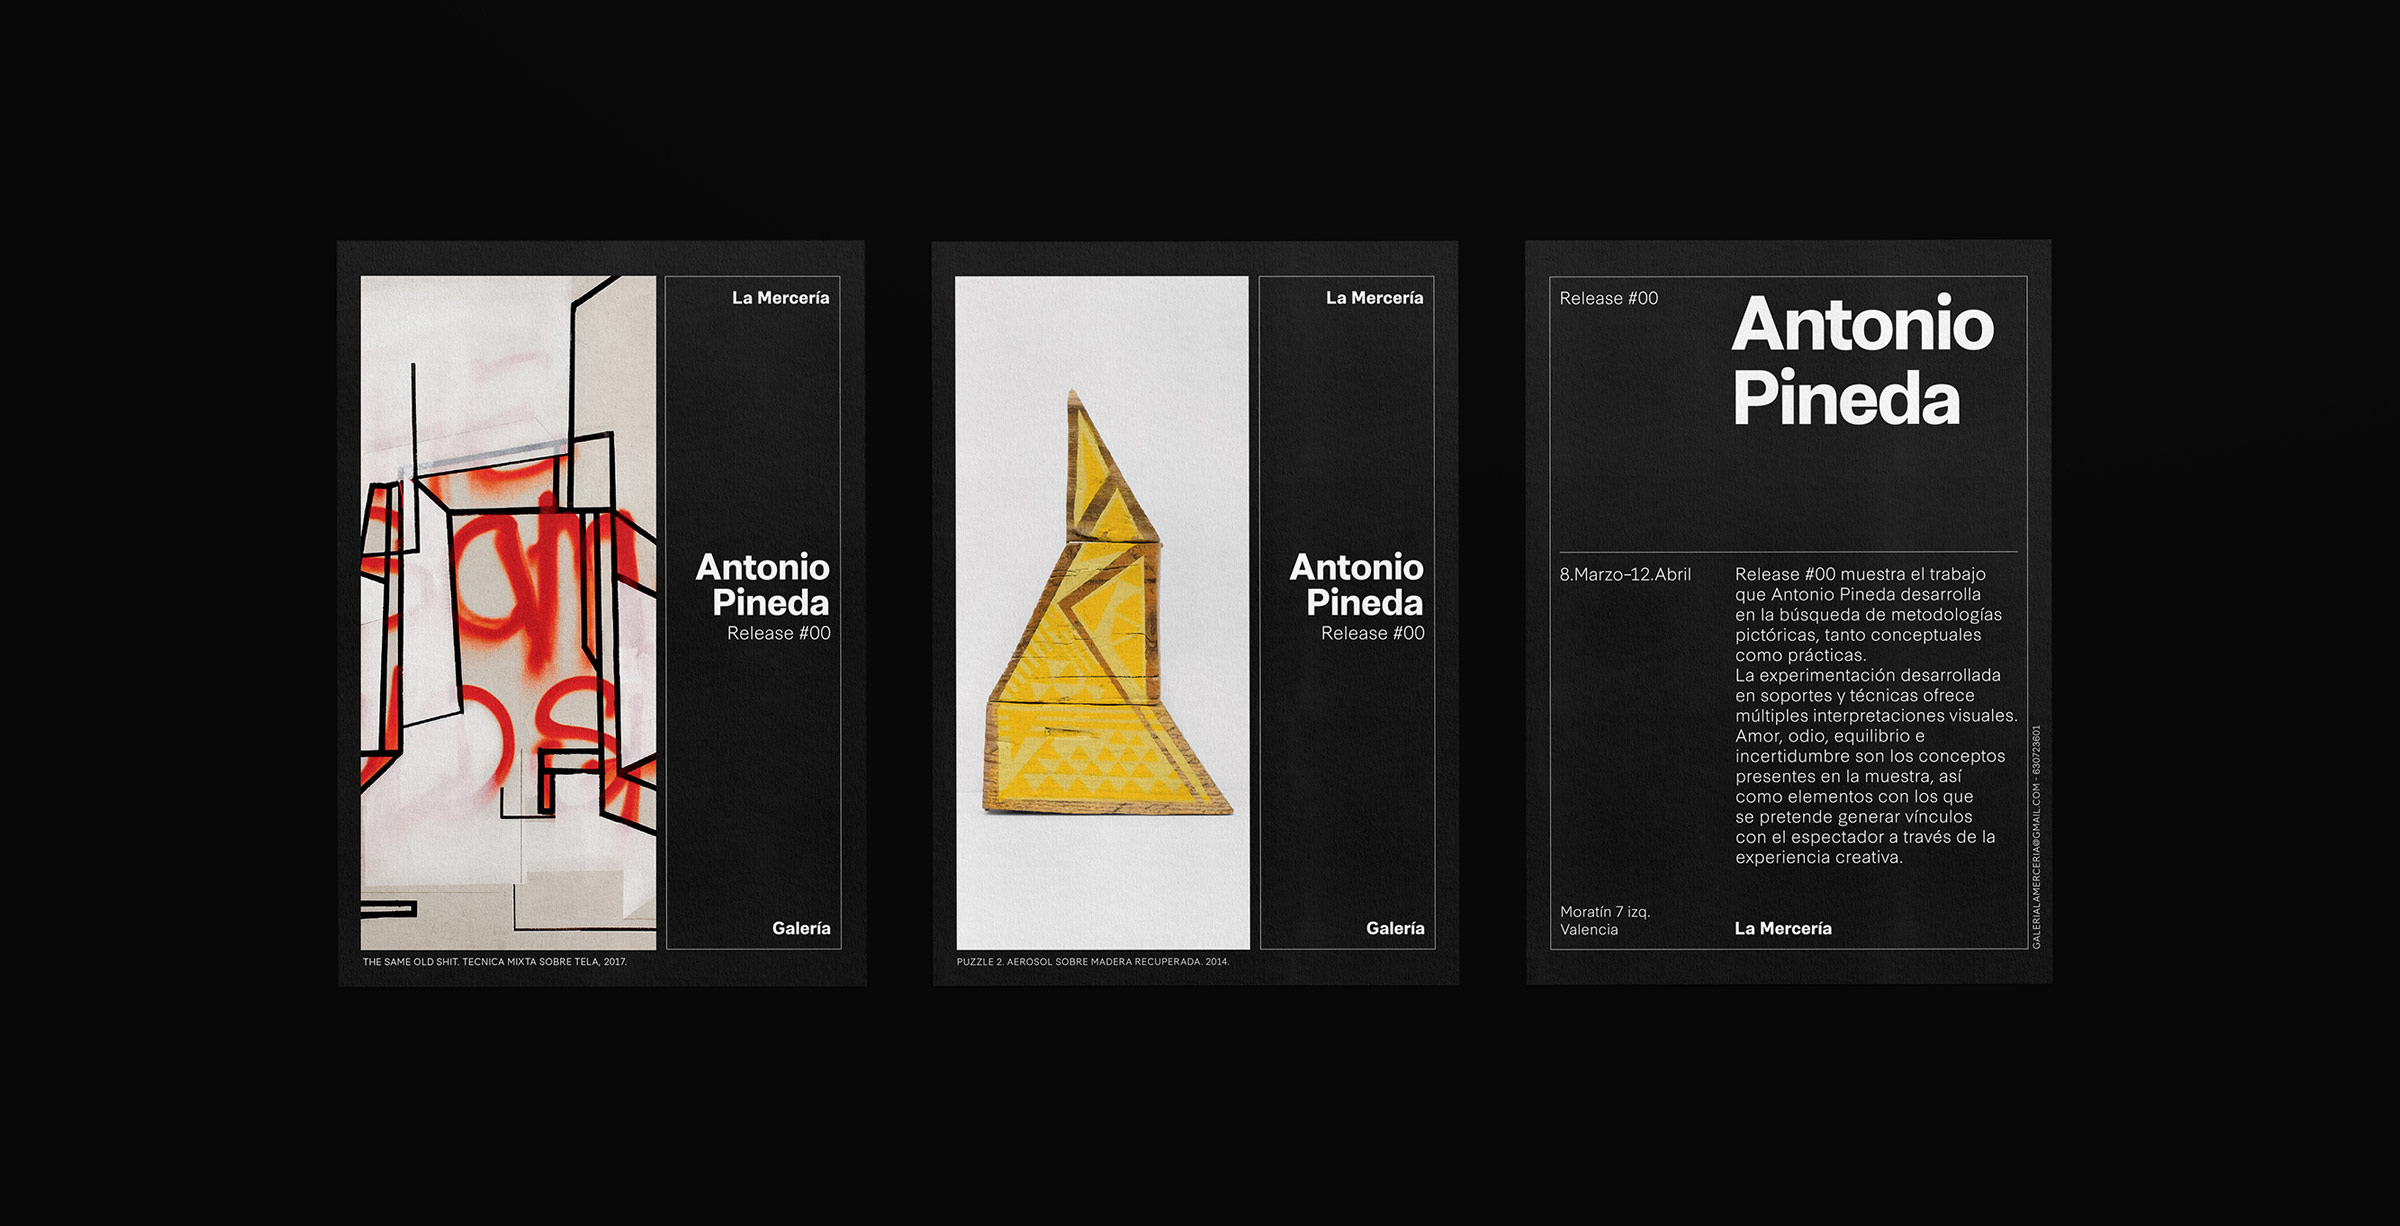 Fase, estudio de diseño gráfico. Identidad corporativa La Mercería, galería de arte. Postales Antonio Pineda.